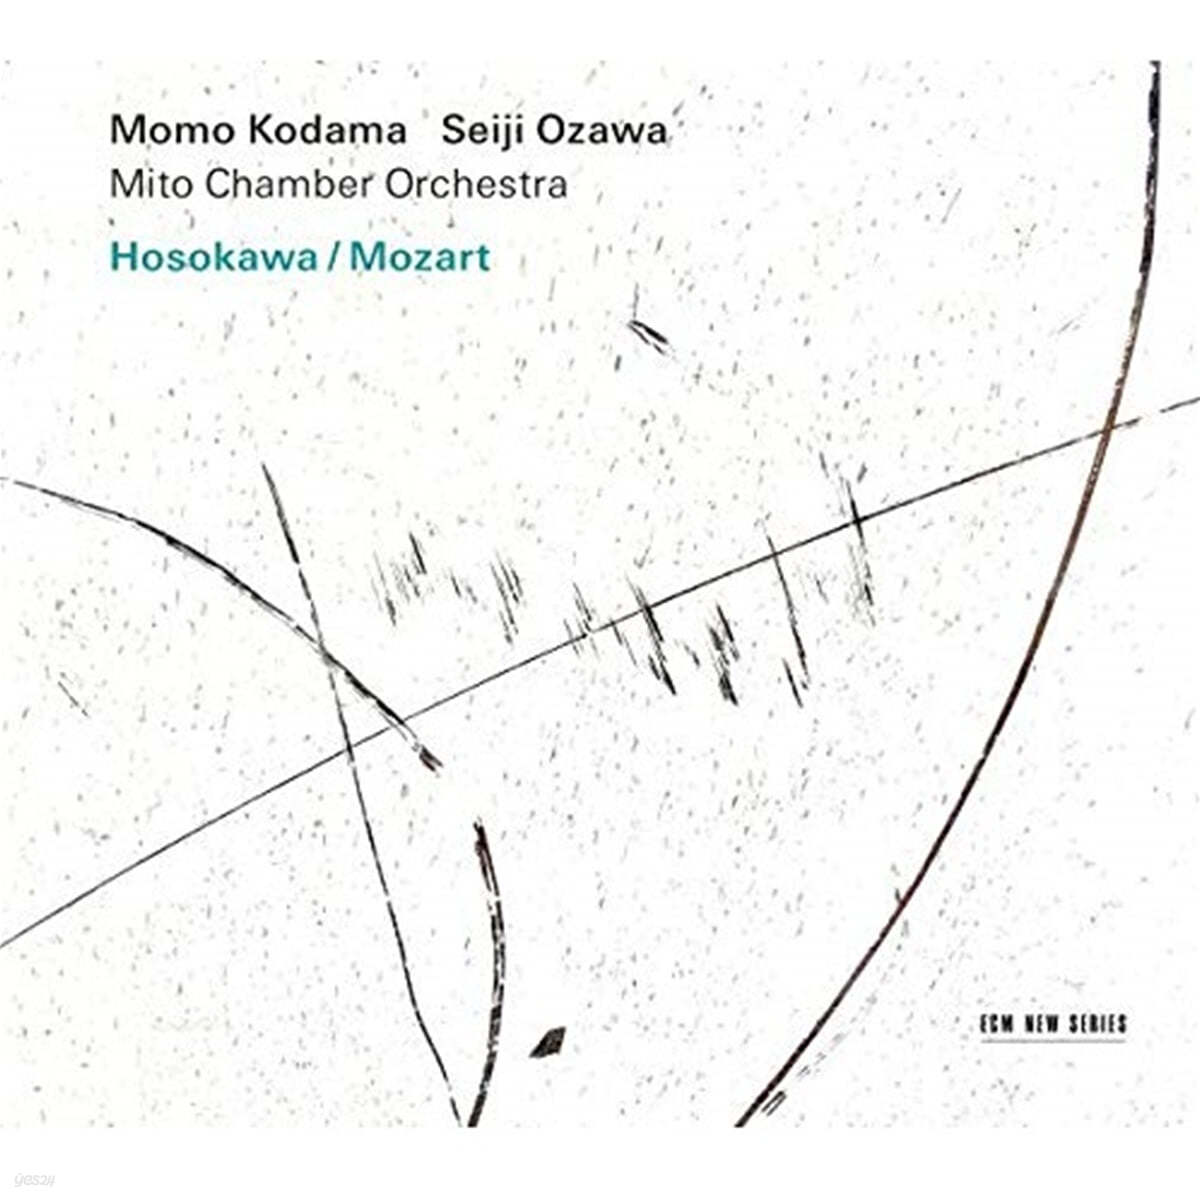 Momo Kodama 모차르트: 피아노 협주곡 23번 / 모차르트-호소카와: 달빛 아래의 연꽃 